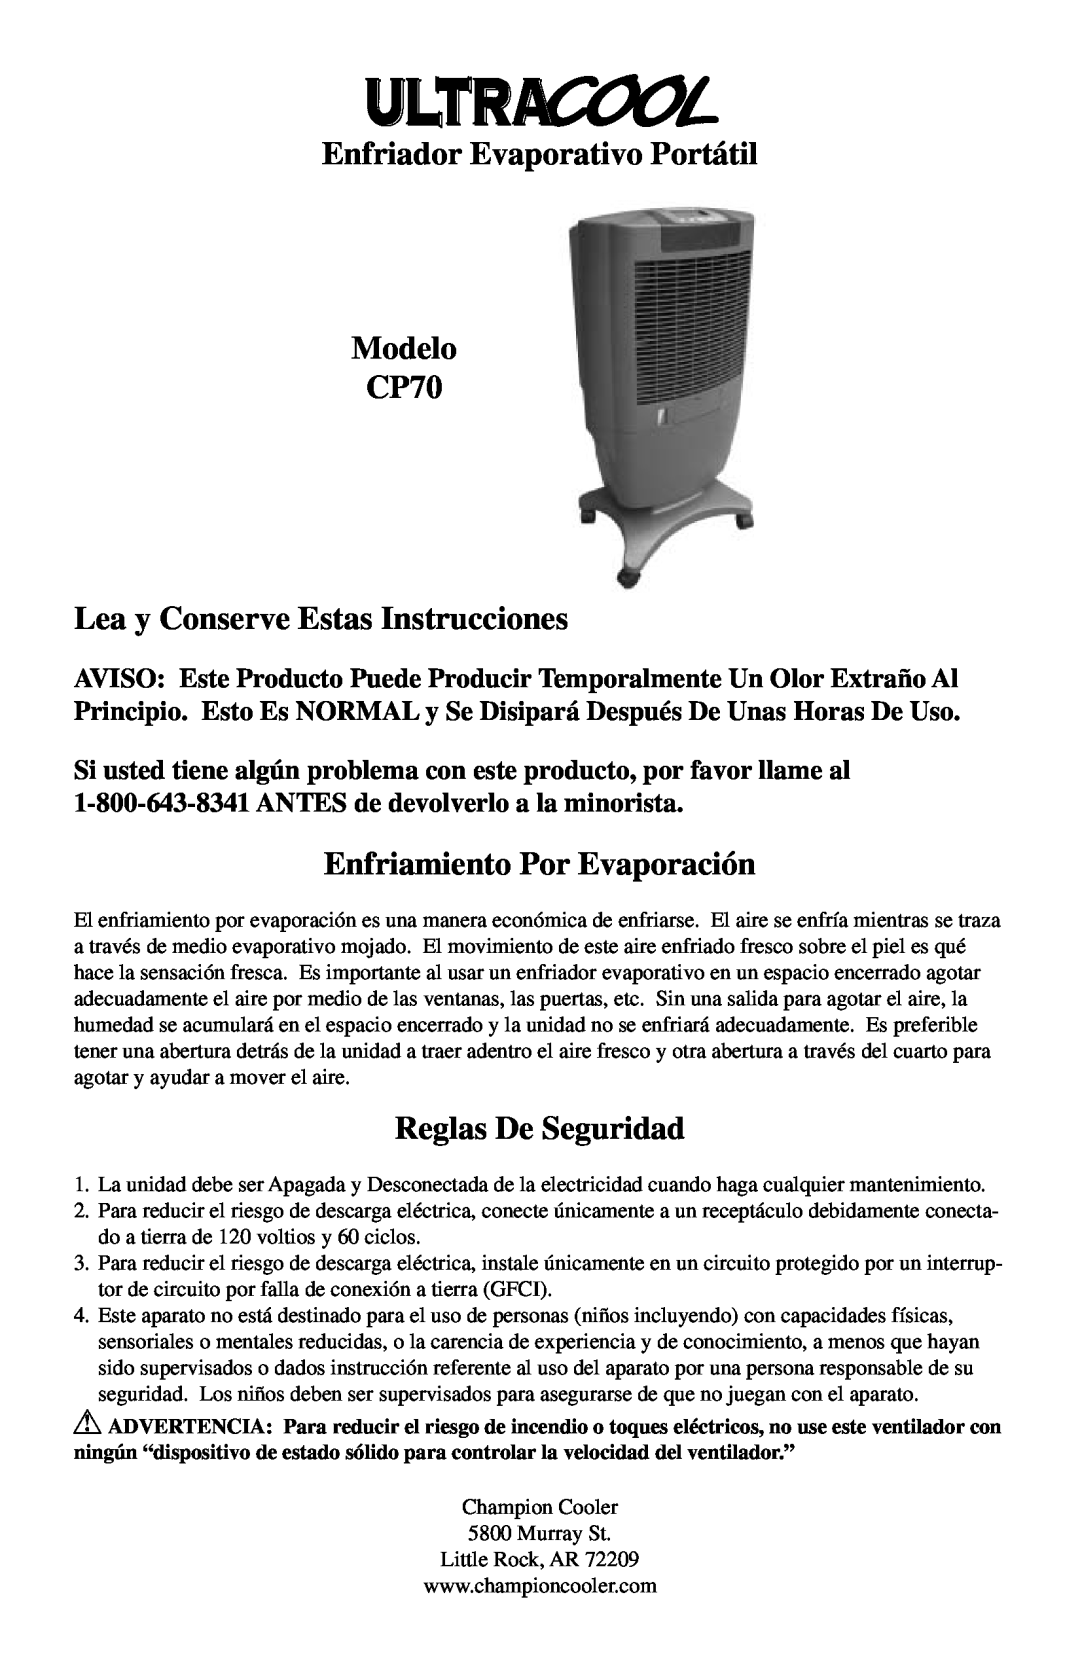 Essick Air Enfriador Evaporativo Portátil Modelo CP70, Lea y Conserve Estas Instrucciones, Enfriamiento Por Evaporación 